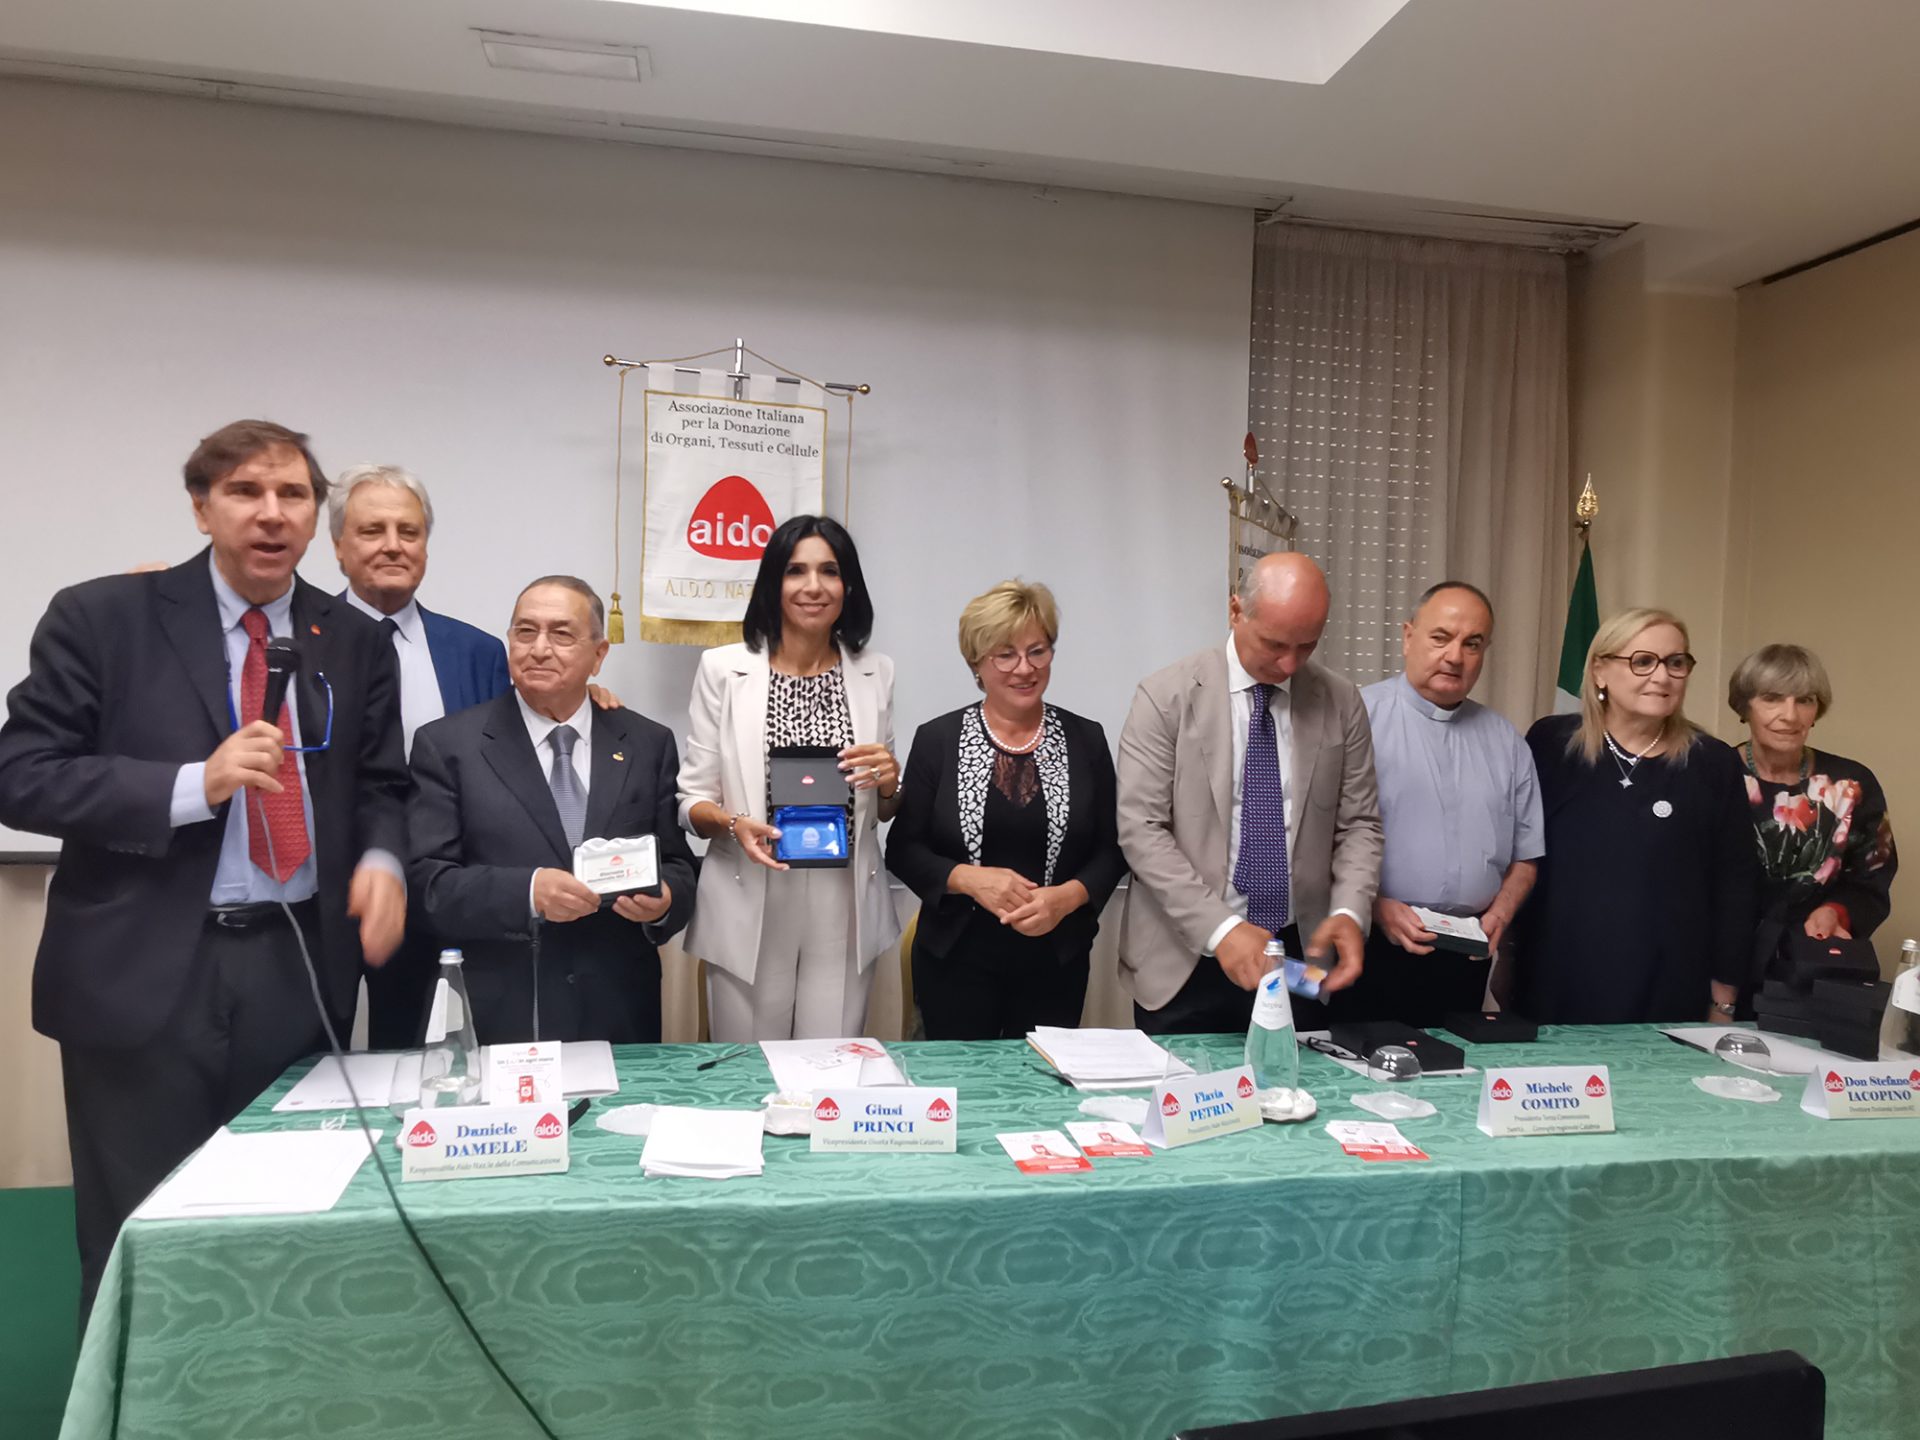 Il sì alla vita, con le donazioni per i trapianti, vola dall’evento nazionale di Reggio Calabria